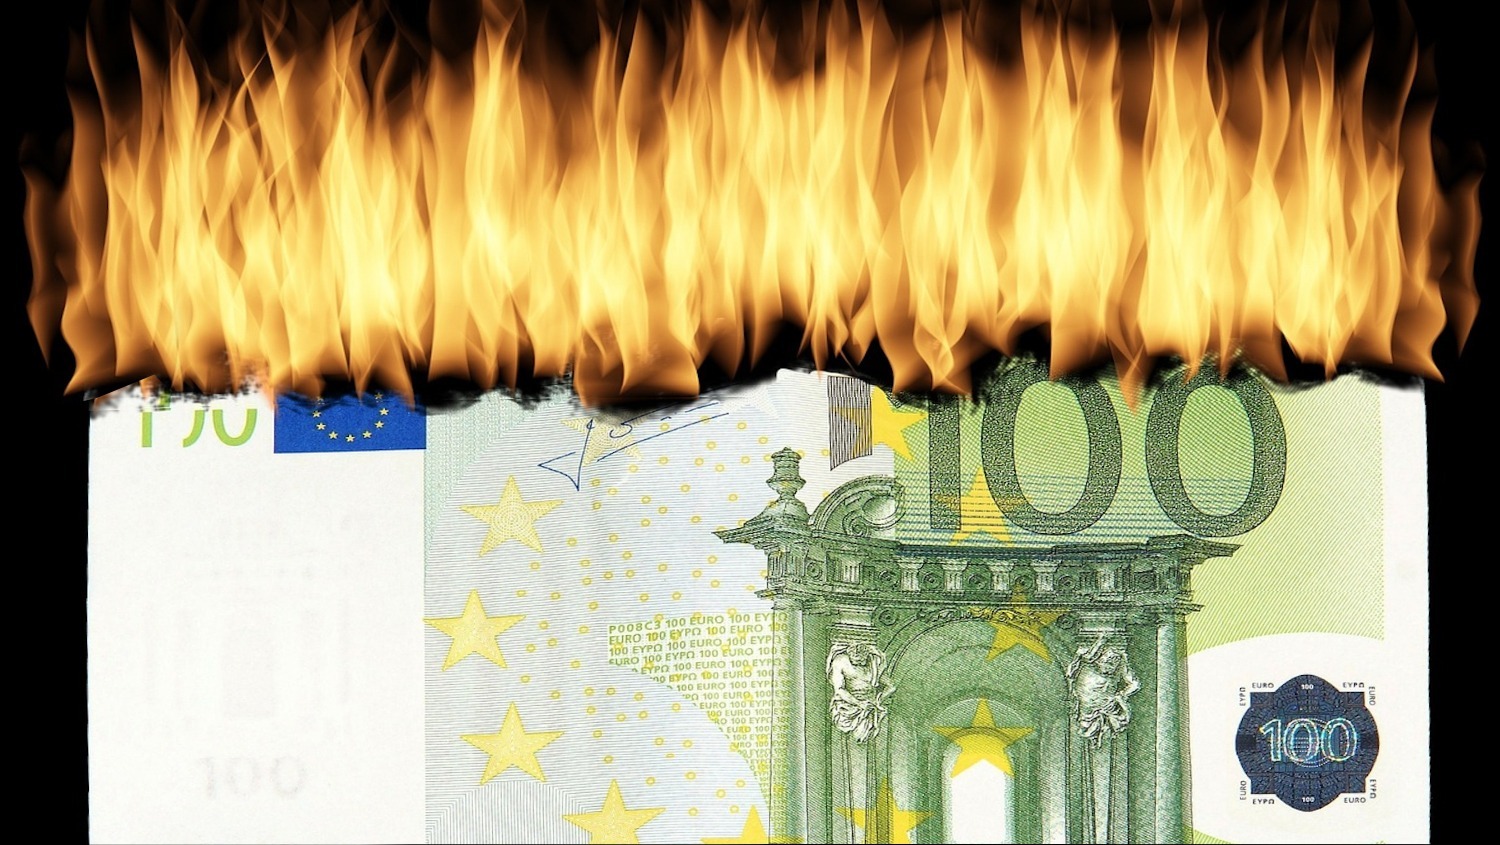 Das gibt’s doch nicht: Hundertausend Euro für Inserate – Regierung vergisst die Infos